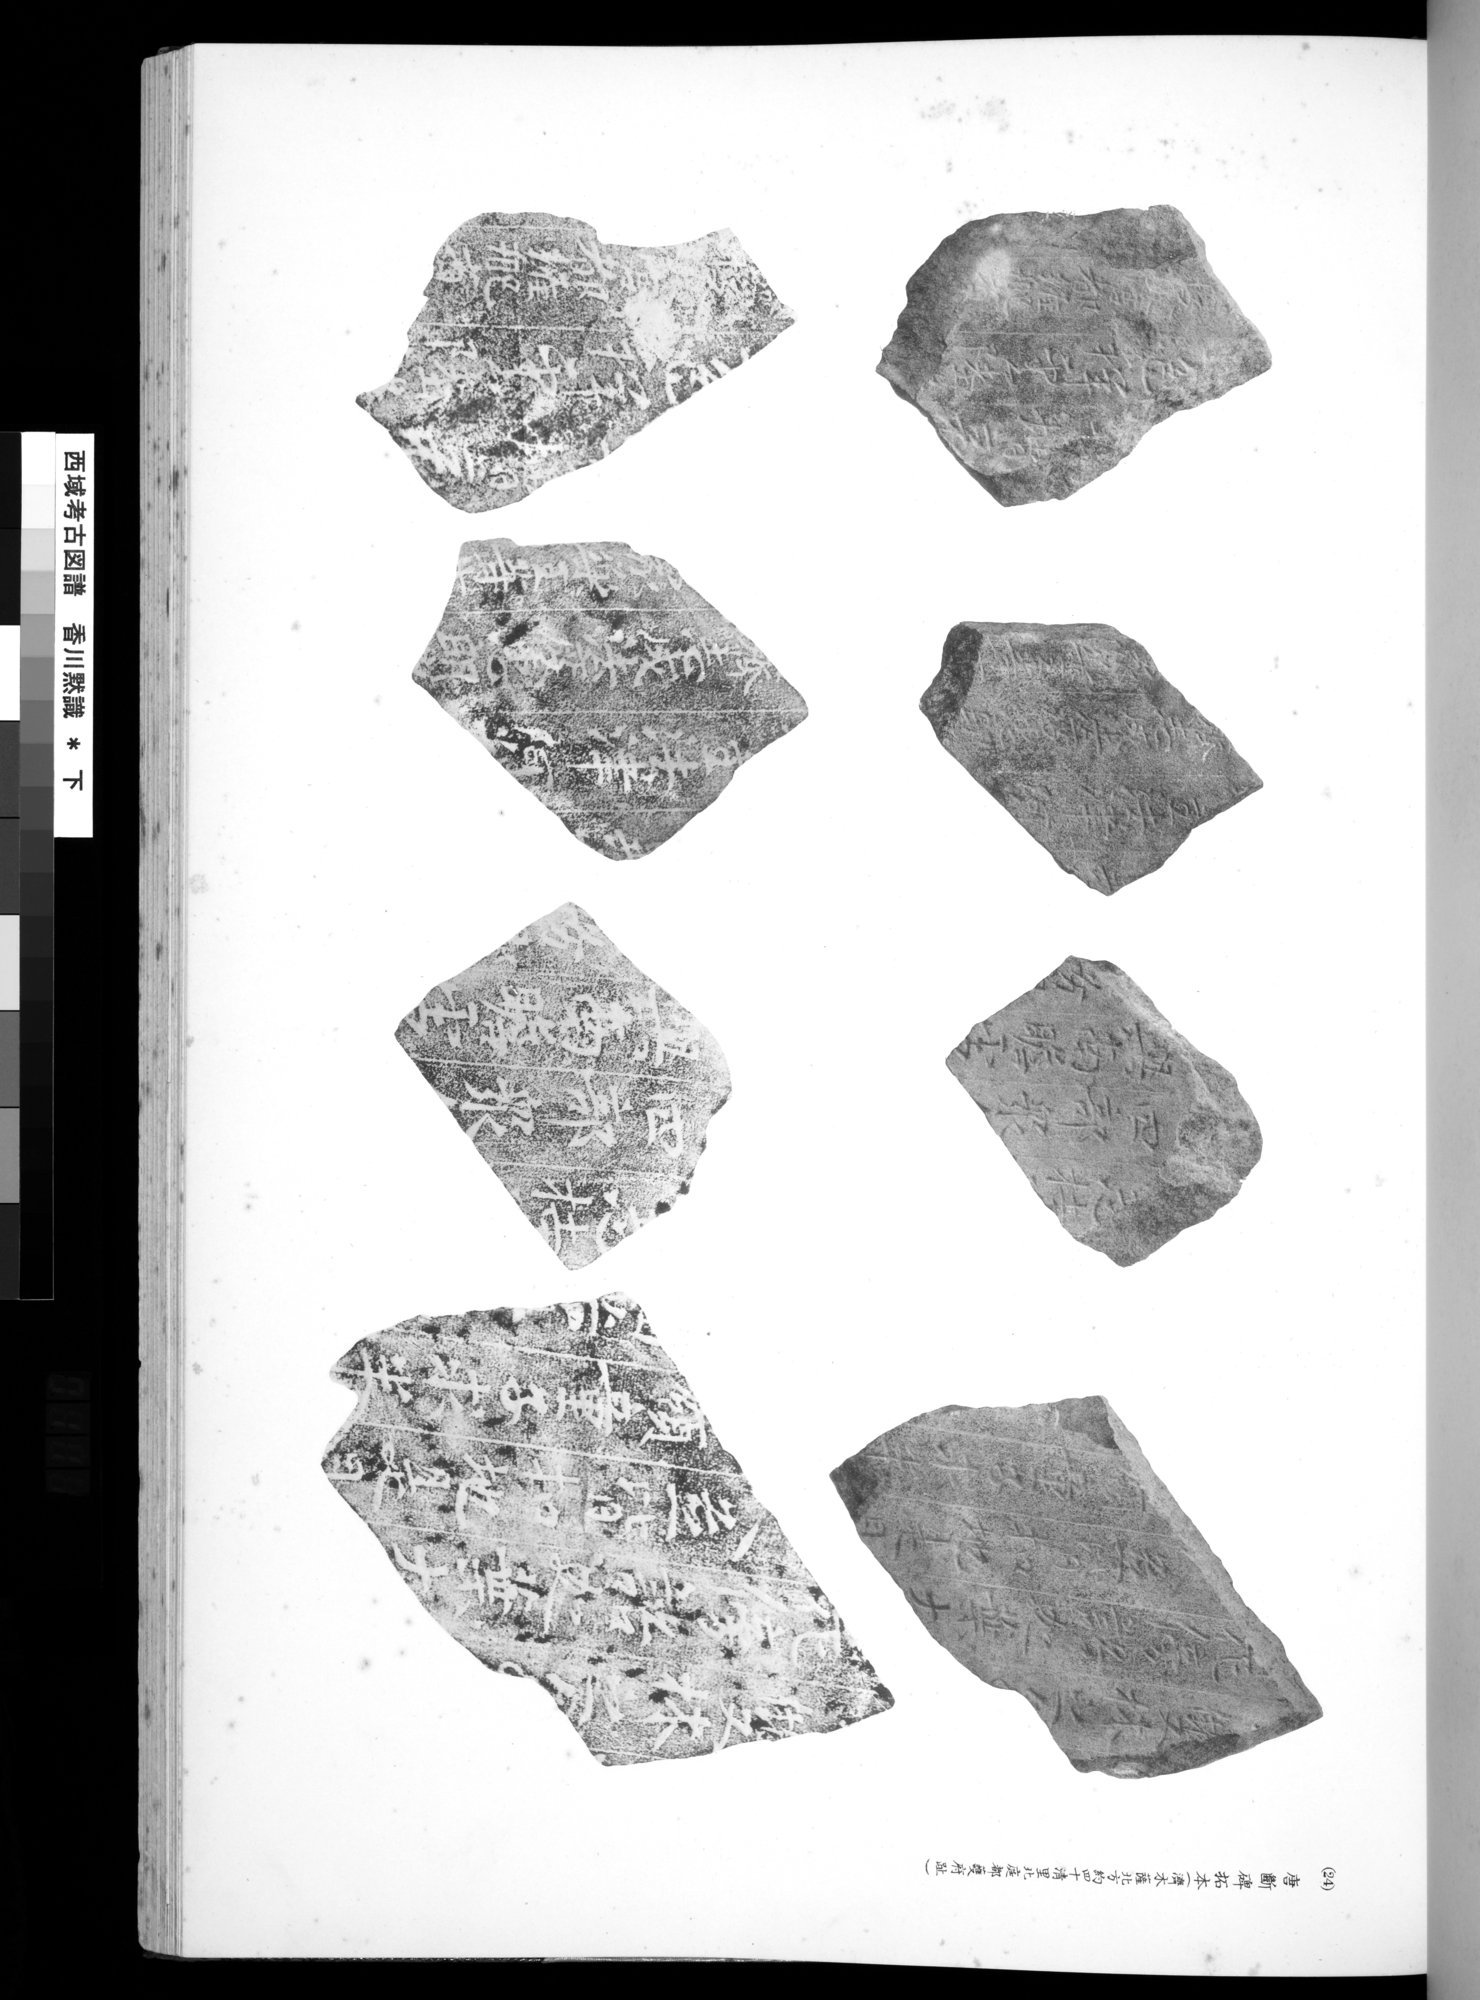 西域考古図譜 : vol.2 / 221 ページ（白黒高解像度画像）